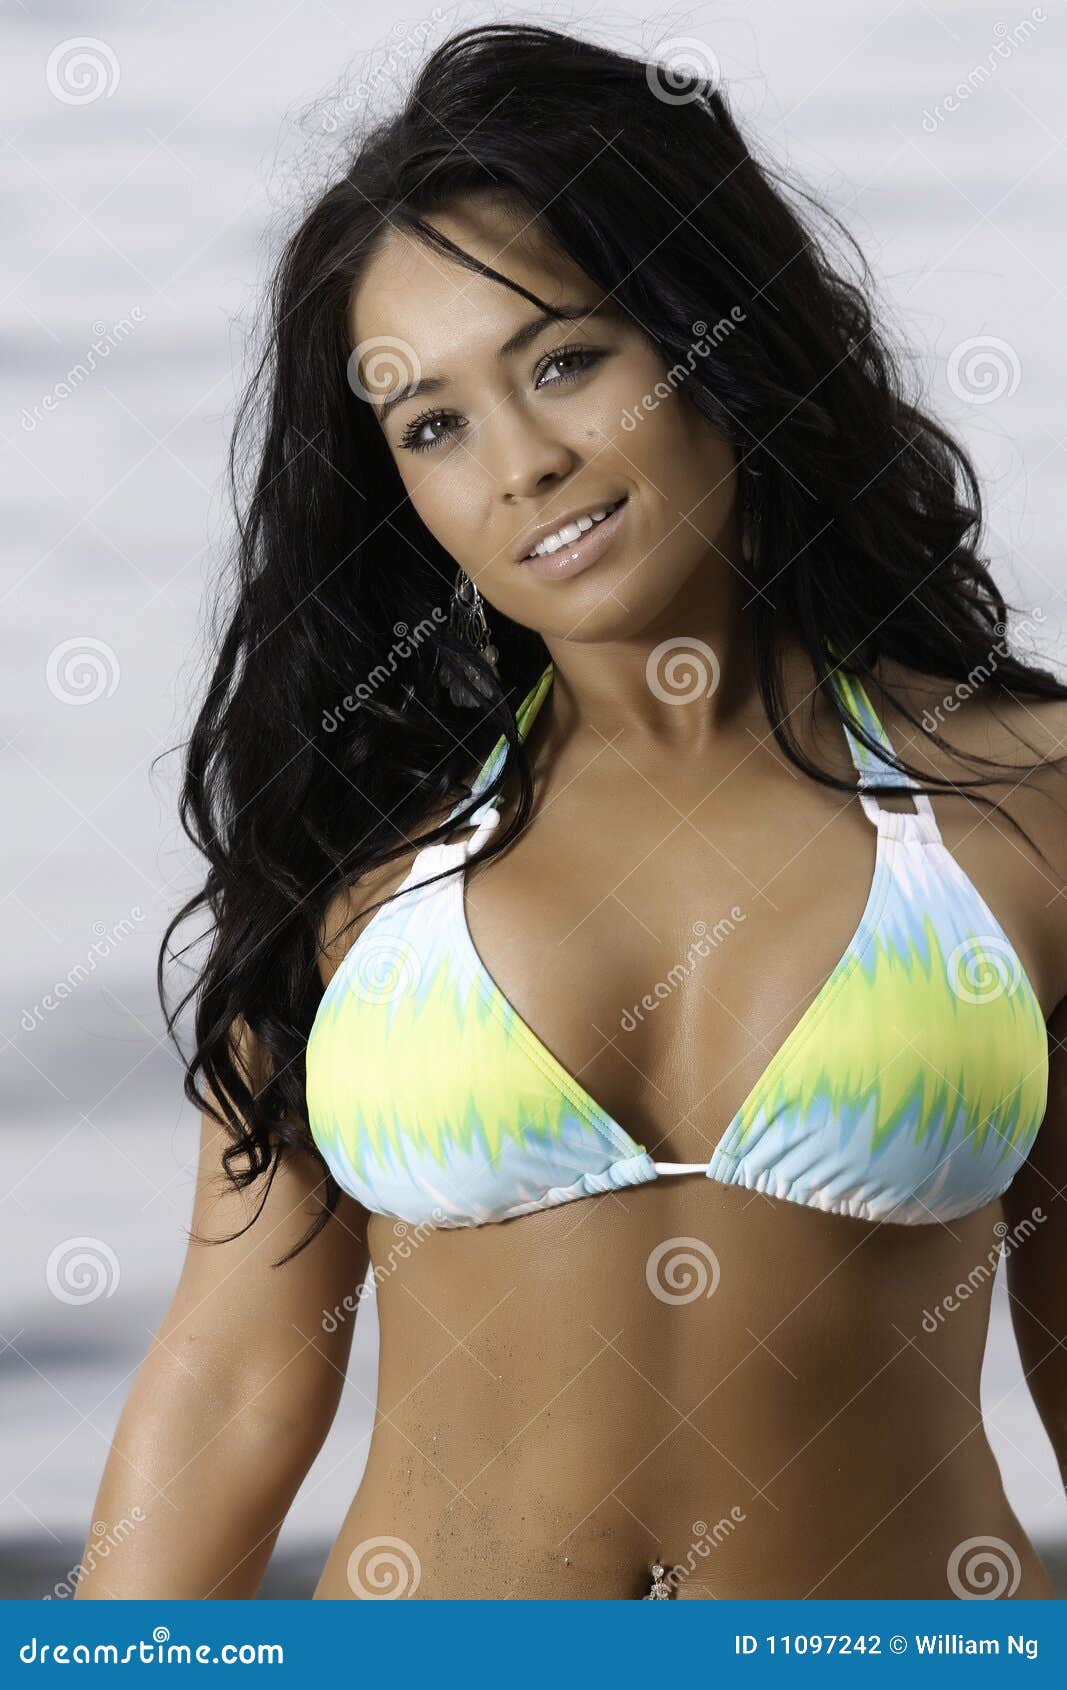 Busty Girl in Yellow and Blue Bikini Stock Photo - Image of beach ...